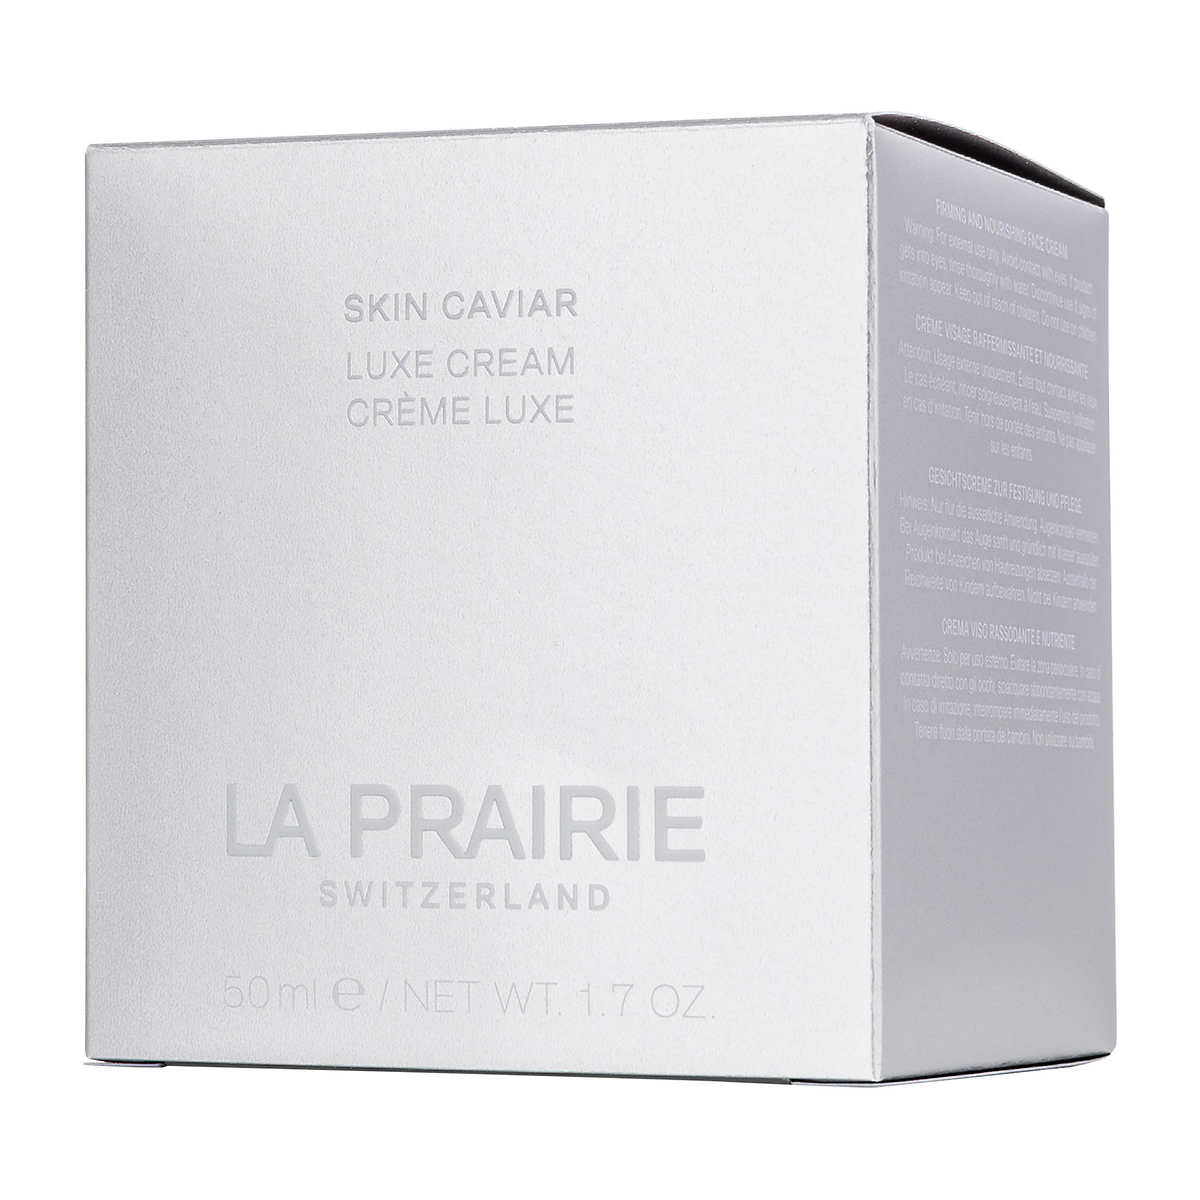 La Prairie Skin Caviar Luxe Cream, 50 mL | Costco